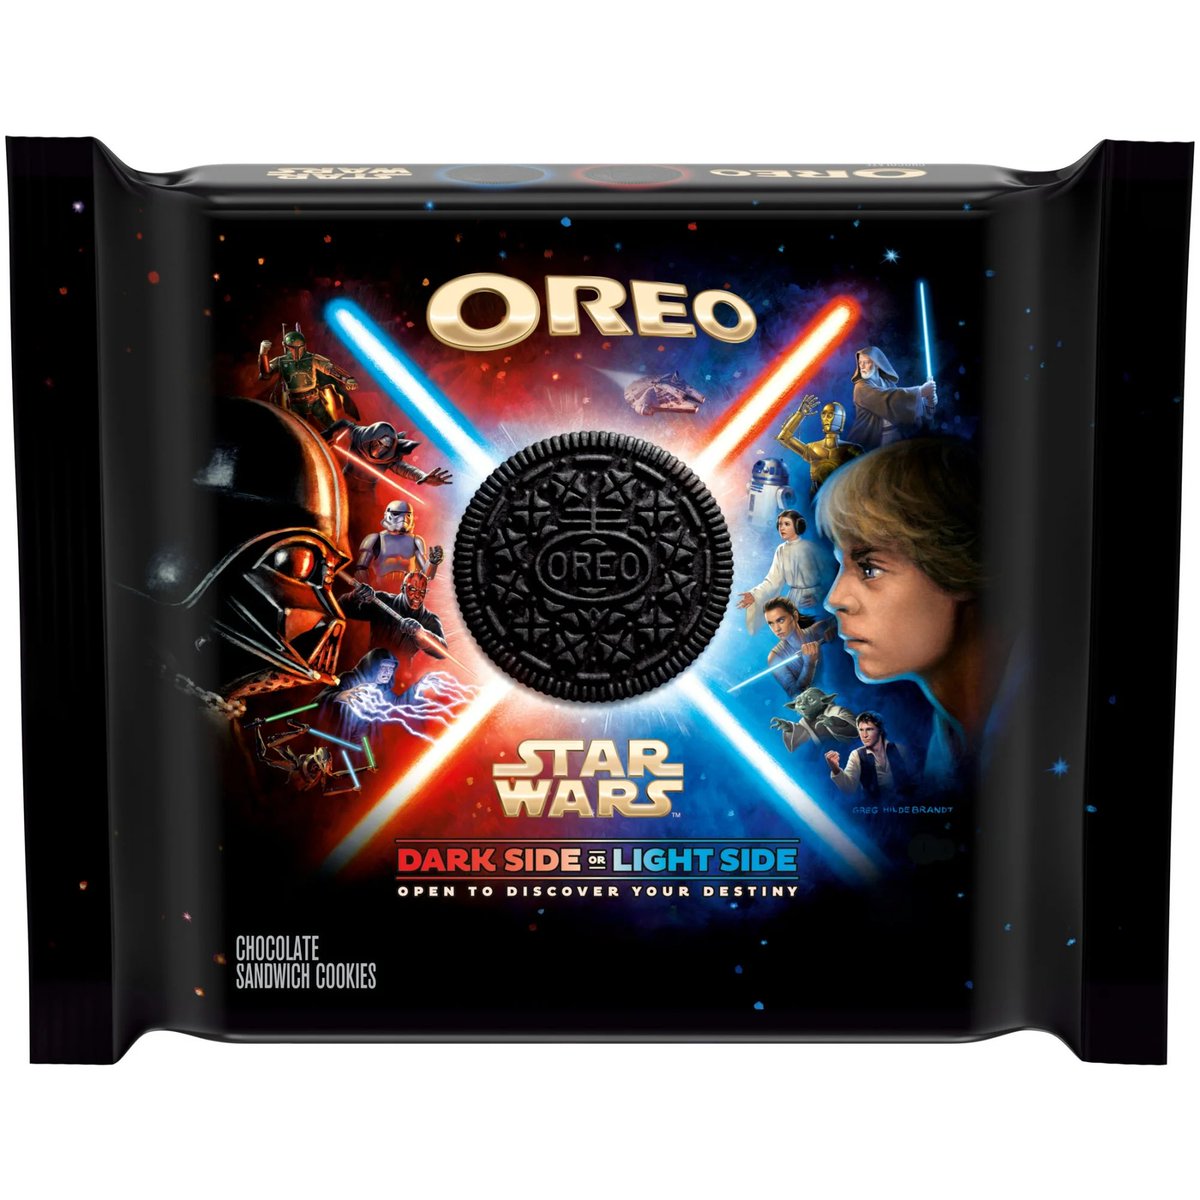 Preorder Now: Star Wars Oreo! #Ad #Oreo #StarWars . Amazon - amzn.to/3UXtcJw Walmart - goto.walmart.com/4PXG5r